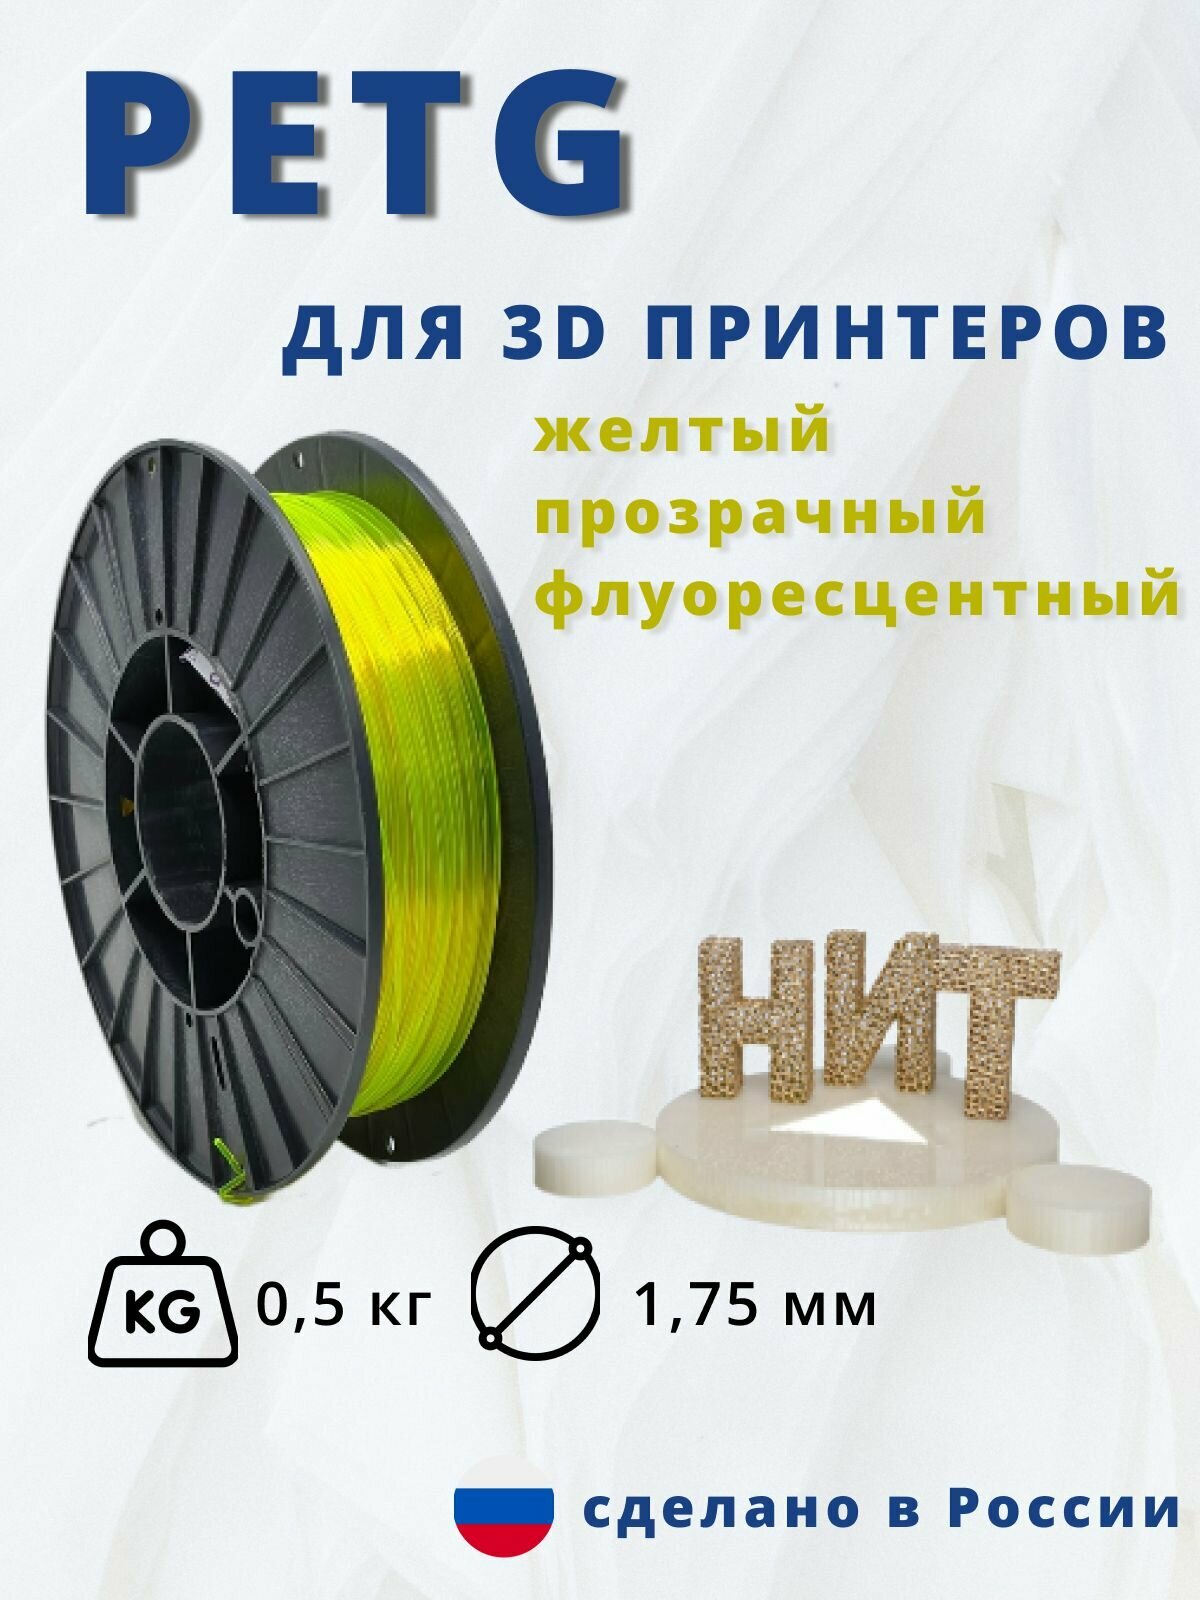 Пластик для 3д печати "НИТ" Petg желтый прозрачный флоуресцентный 05 кг